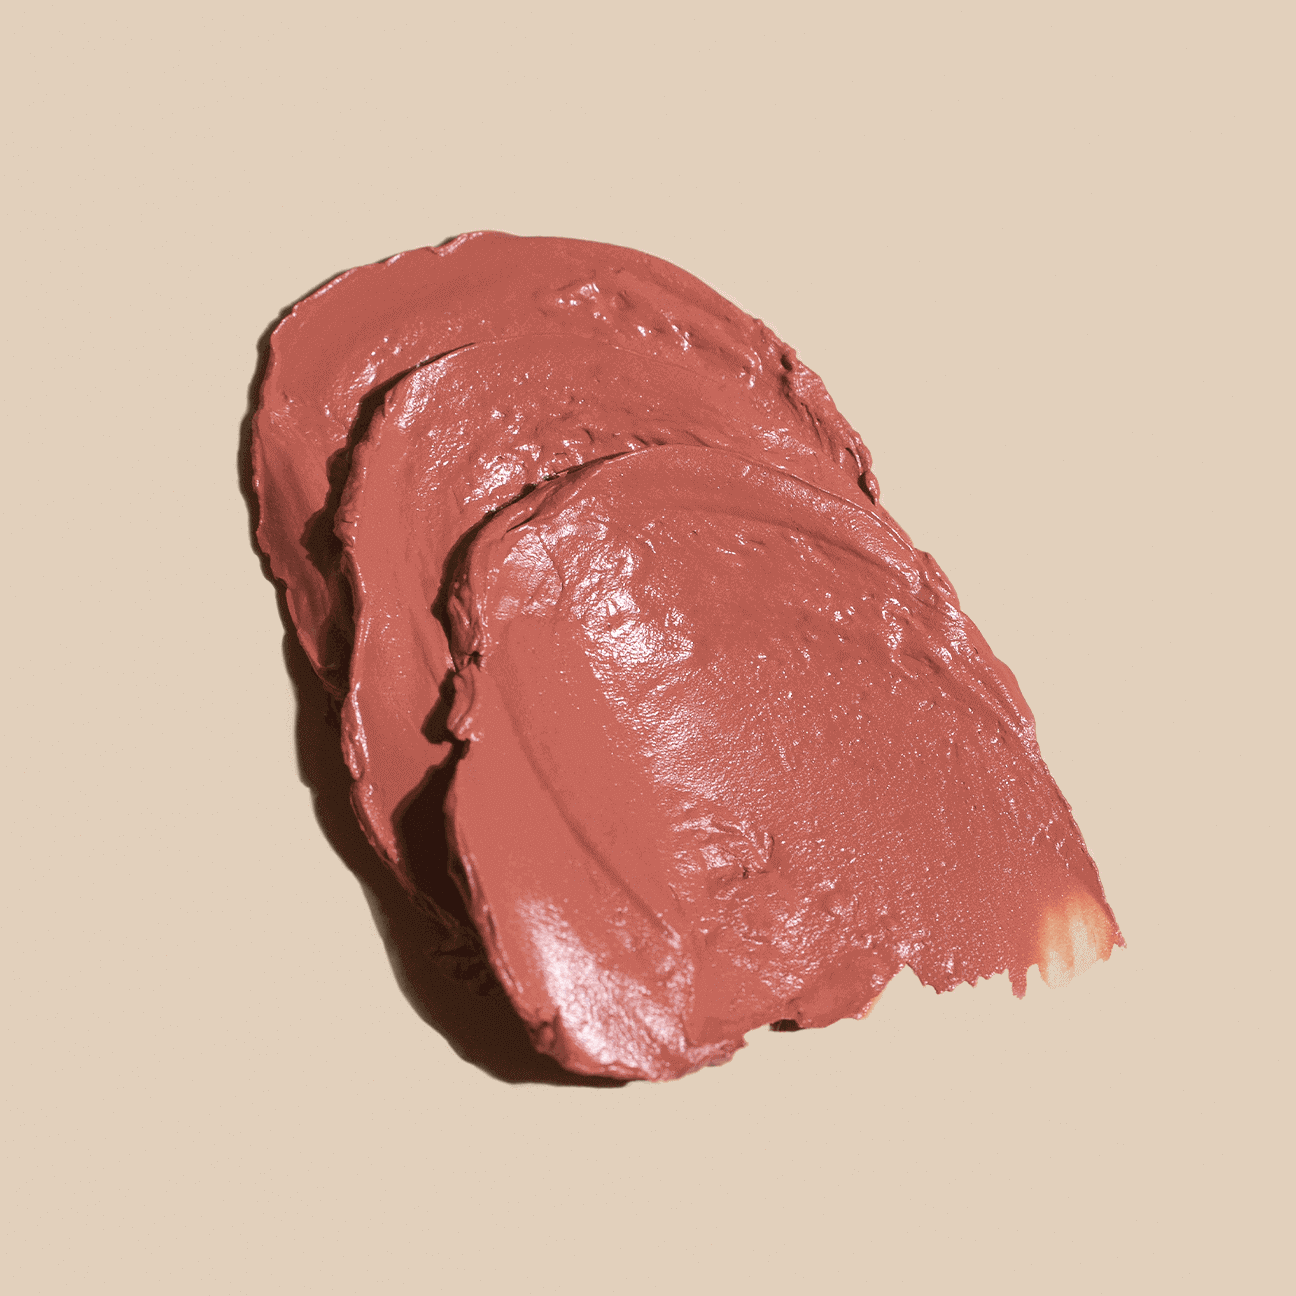 Melting Sheer Lipstick